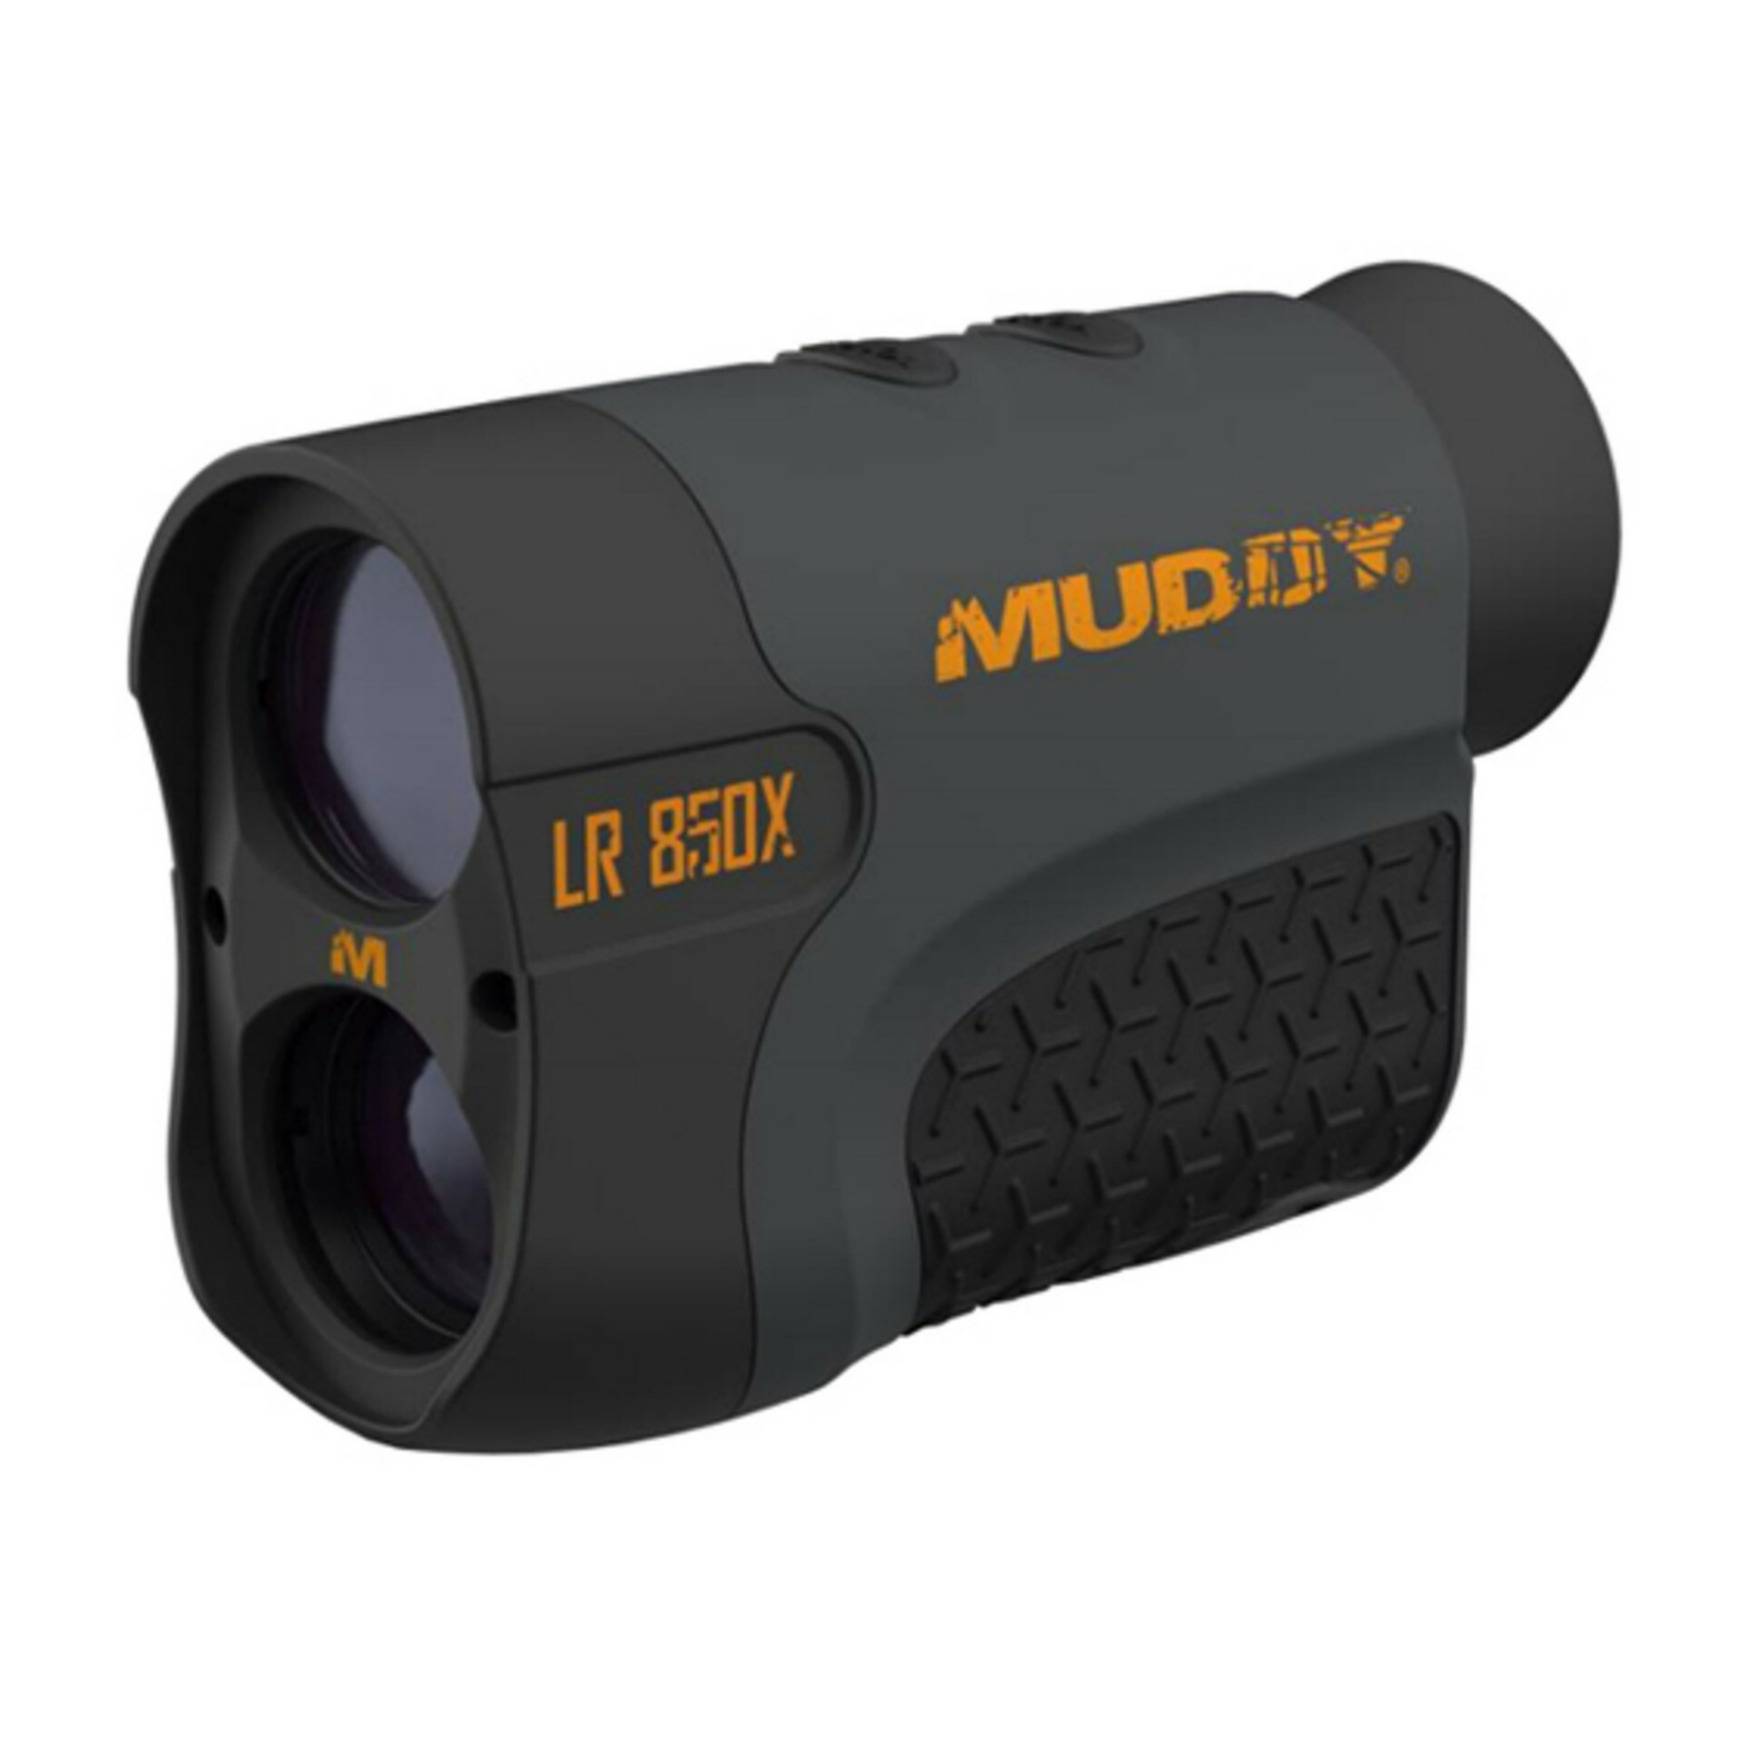 Muddy Laser Range Finder 850 Yard with HD